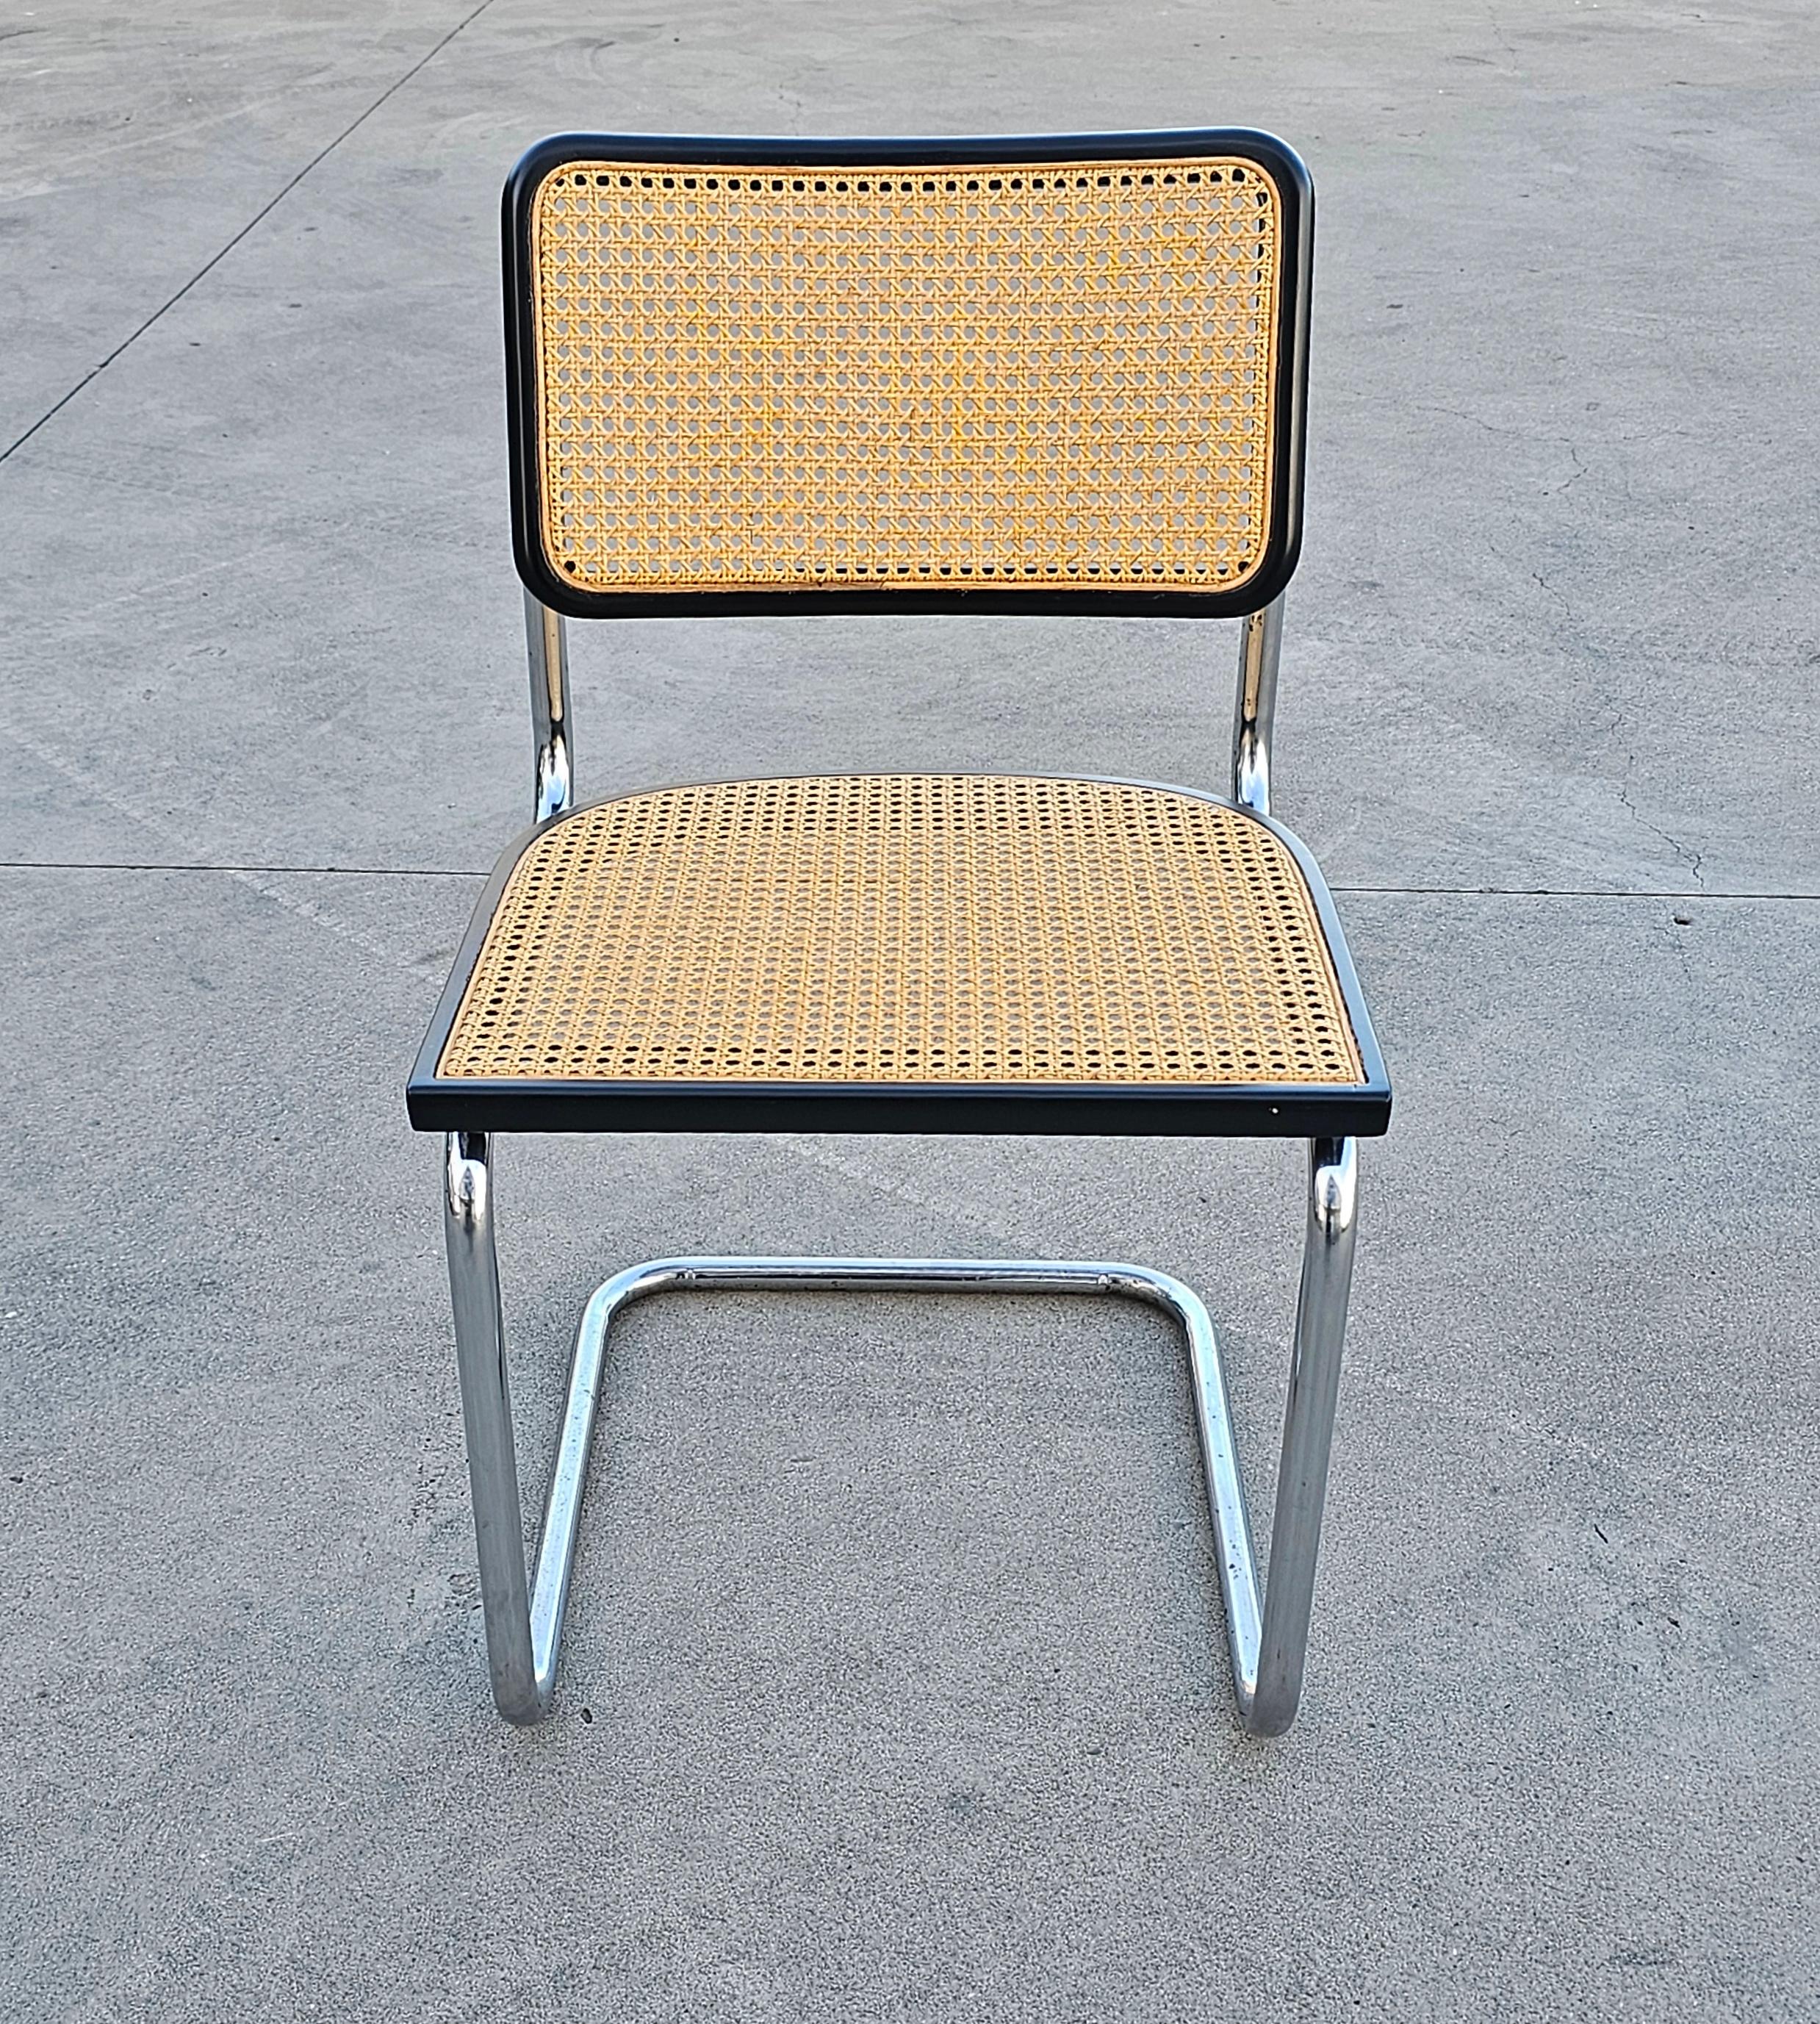 Dieses Angebot umfasst sehr bekannte Stühle - Cesca Chair von Marcel Breuer. Die Herstellung der Stühle wird Gavina zugeschrieben.

Marcel Breuer war ein Architekt, der in der Bauahus School of Architecture and Design arbeitete. Er entwarf 1928 den